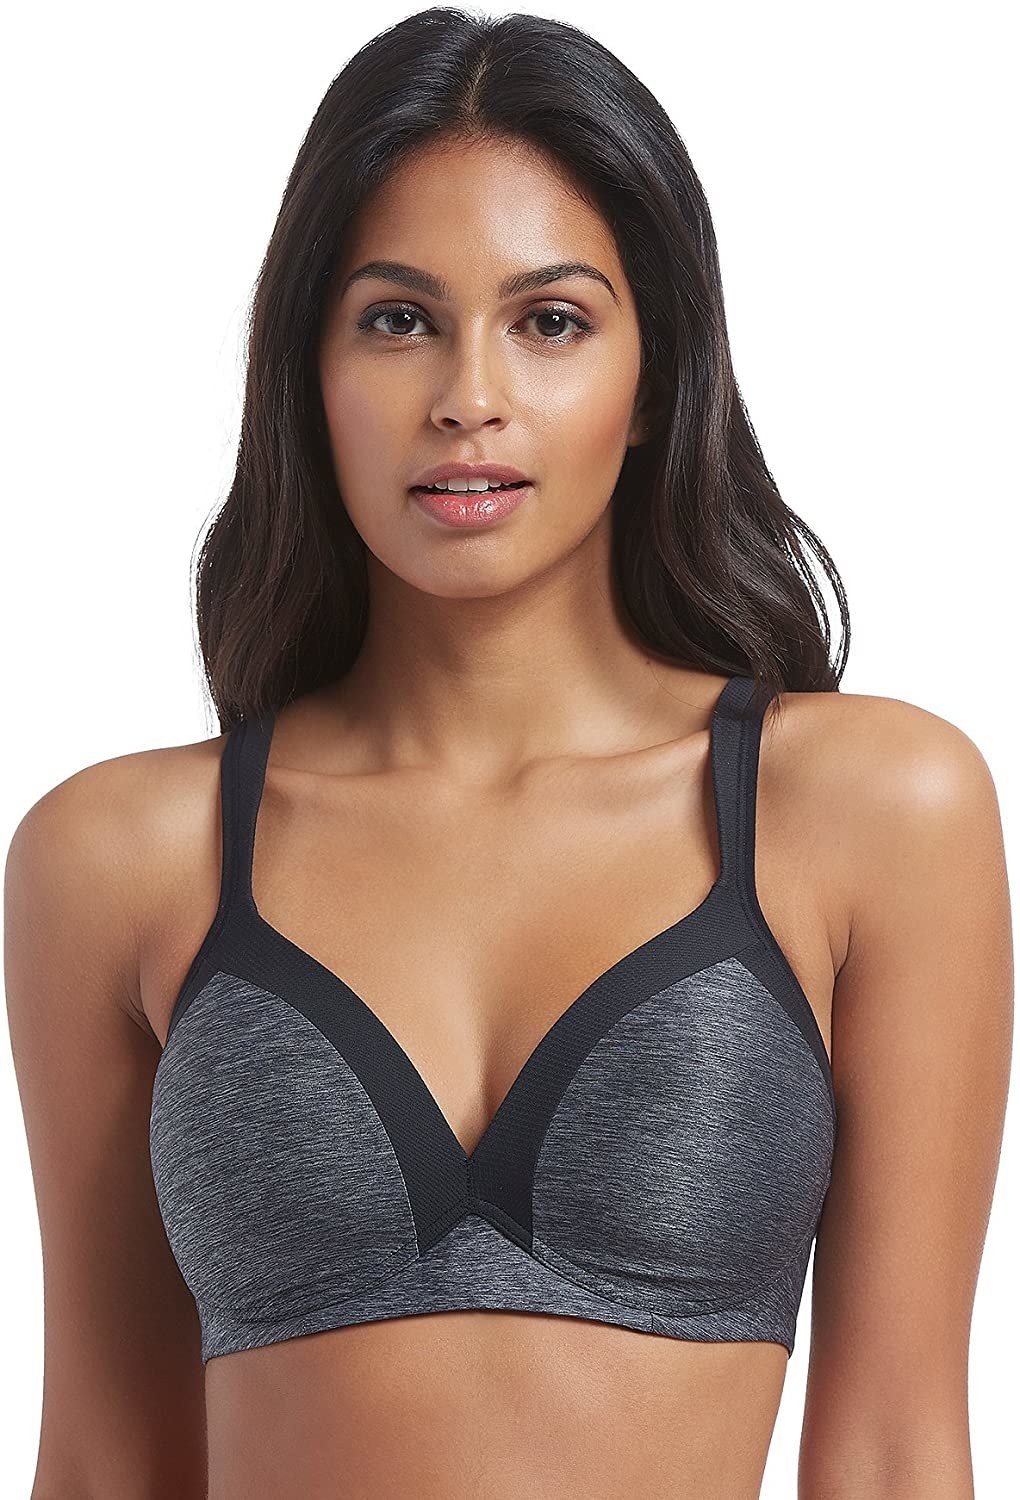 Model wearing the bra in gray